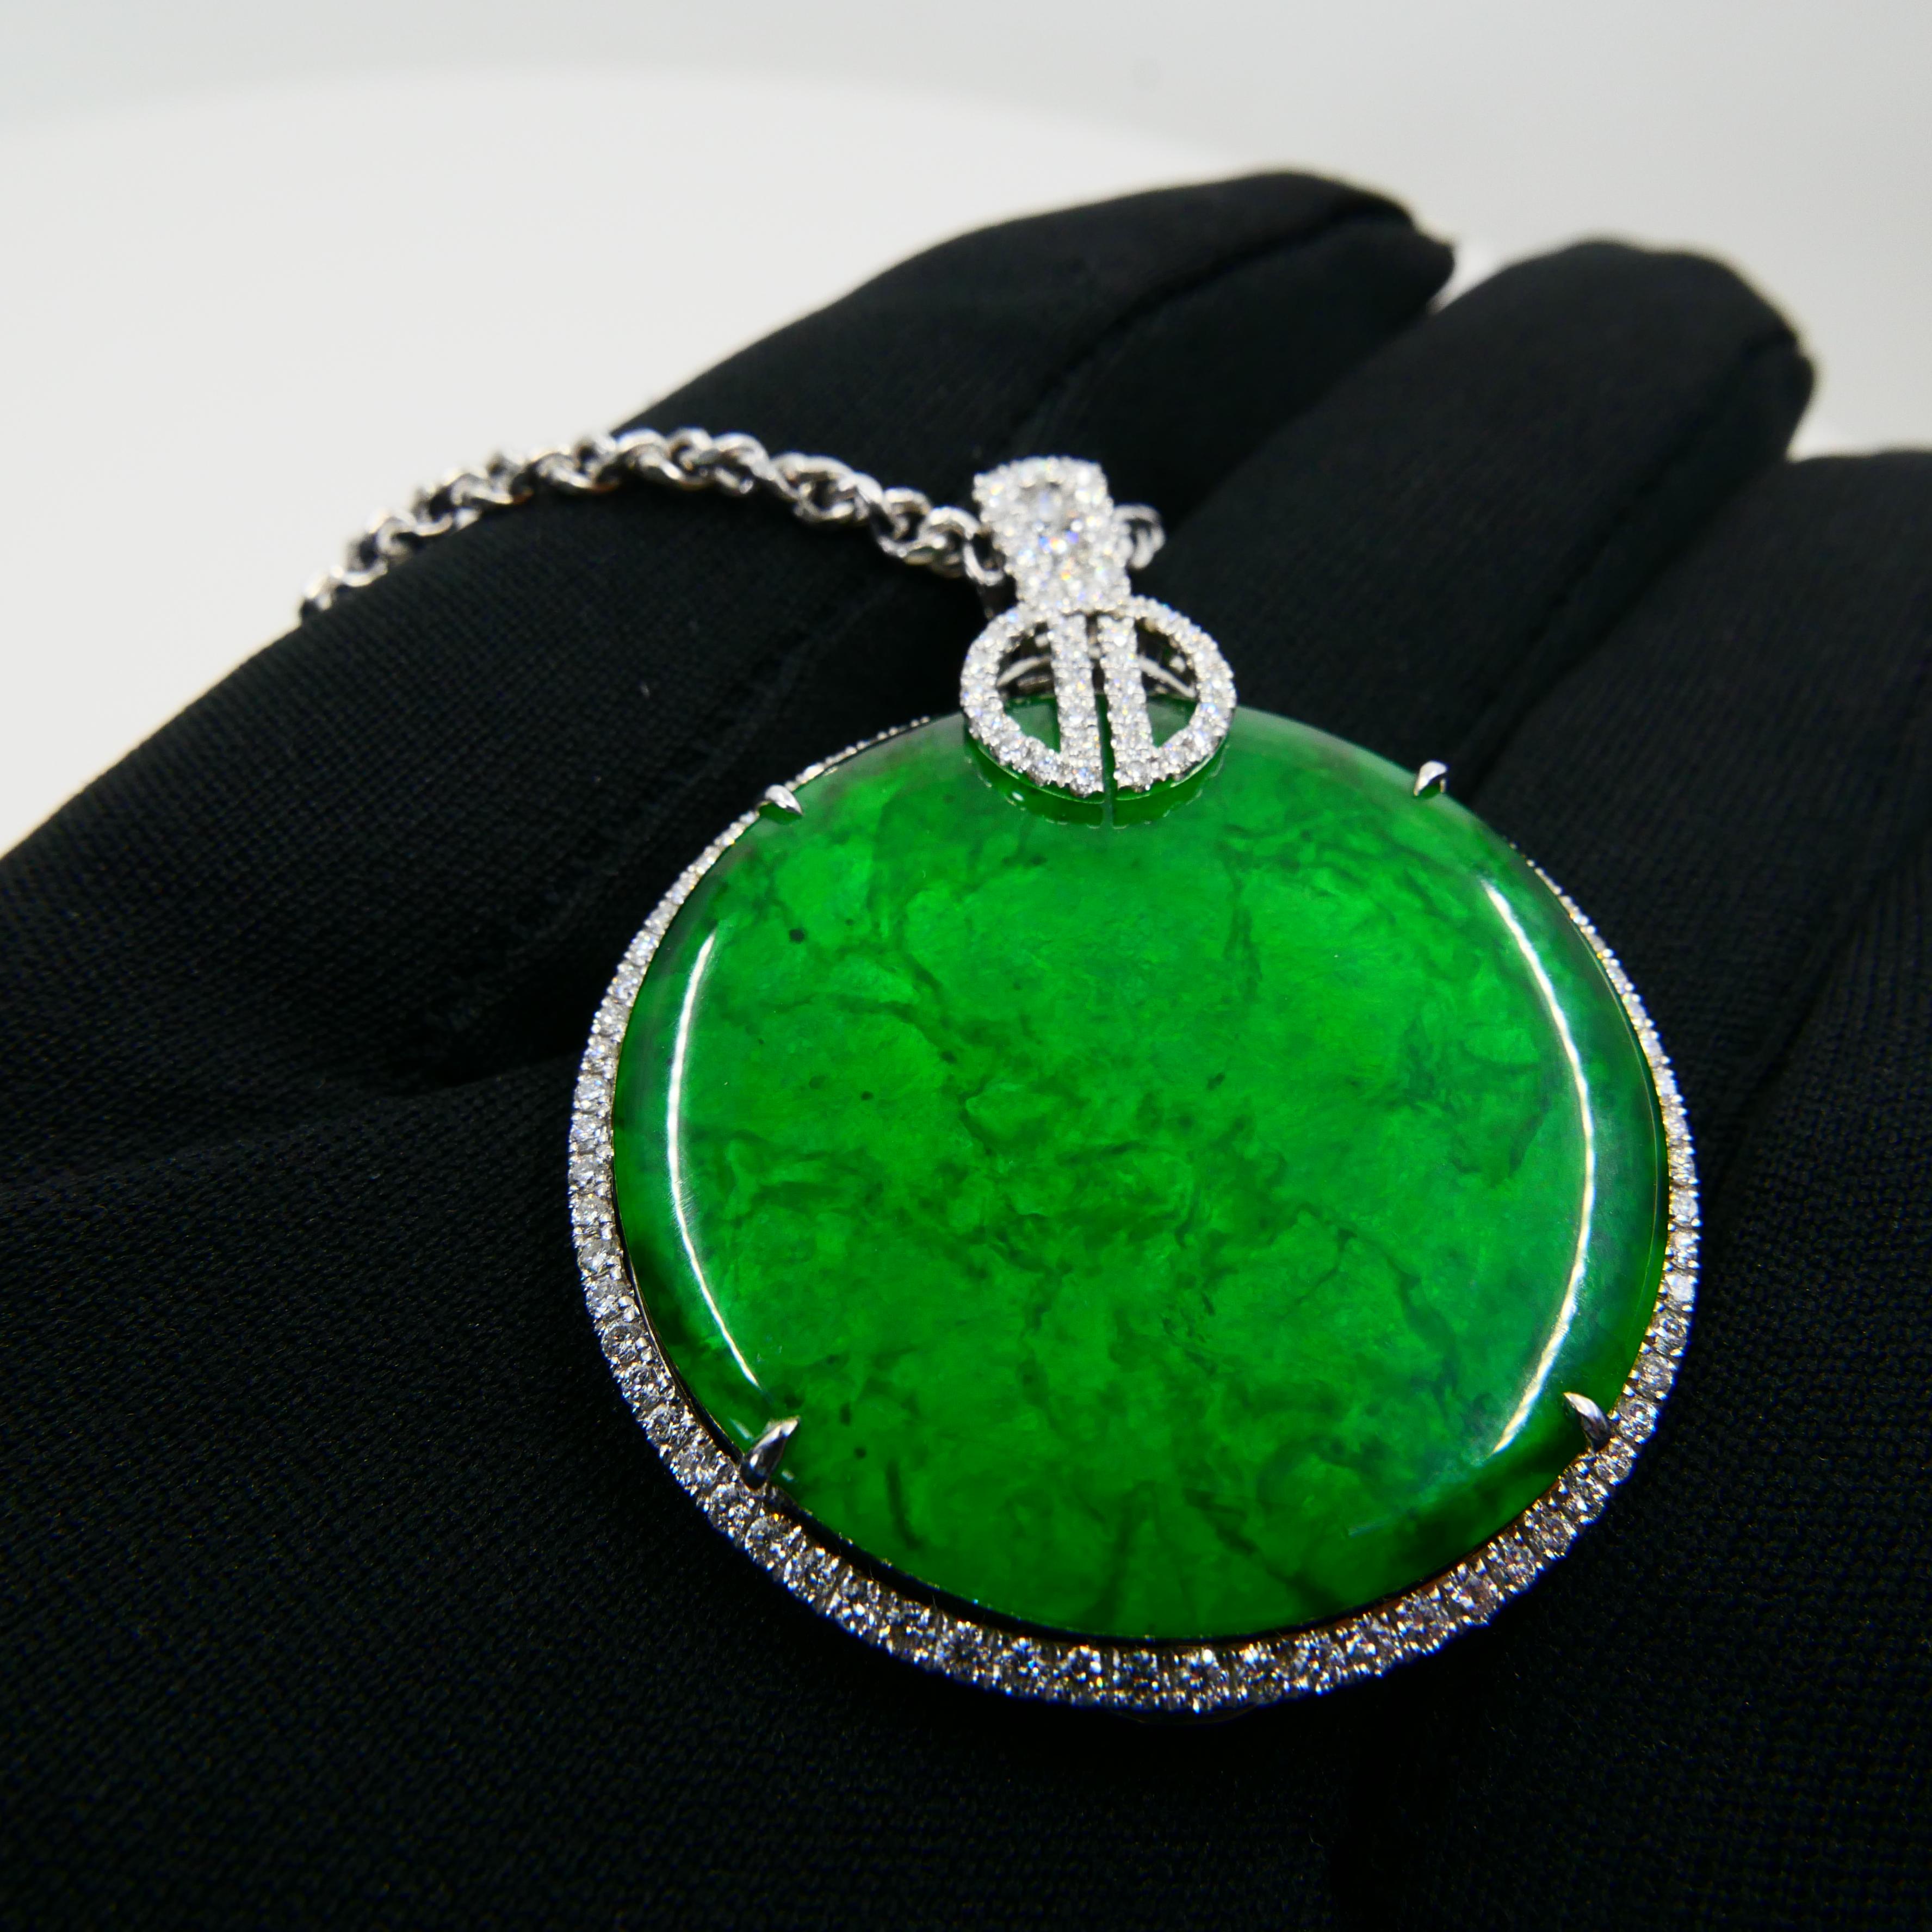 Certified Imperial & Apple Green Jadeite Jade Diamond Pendant, Sika Deer Pattern 7